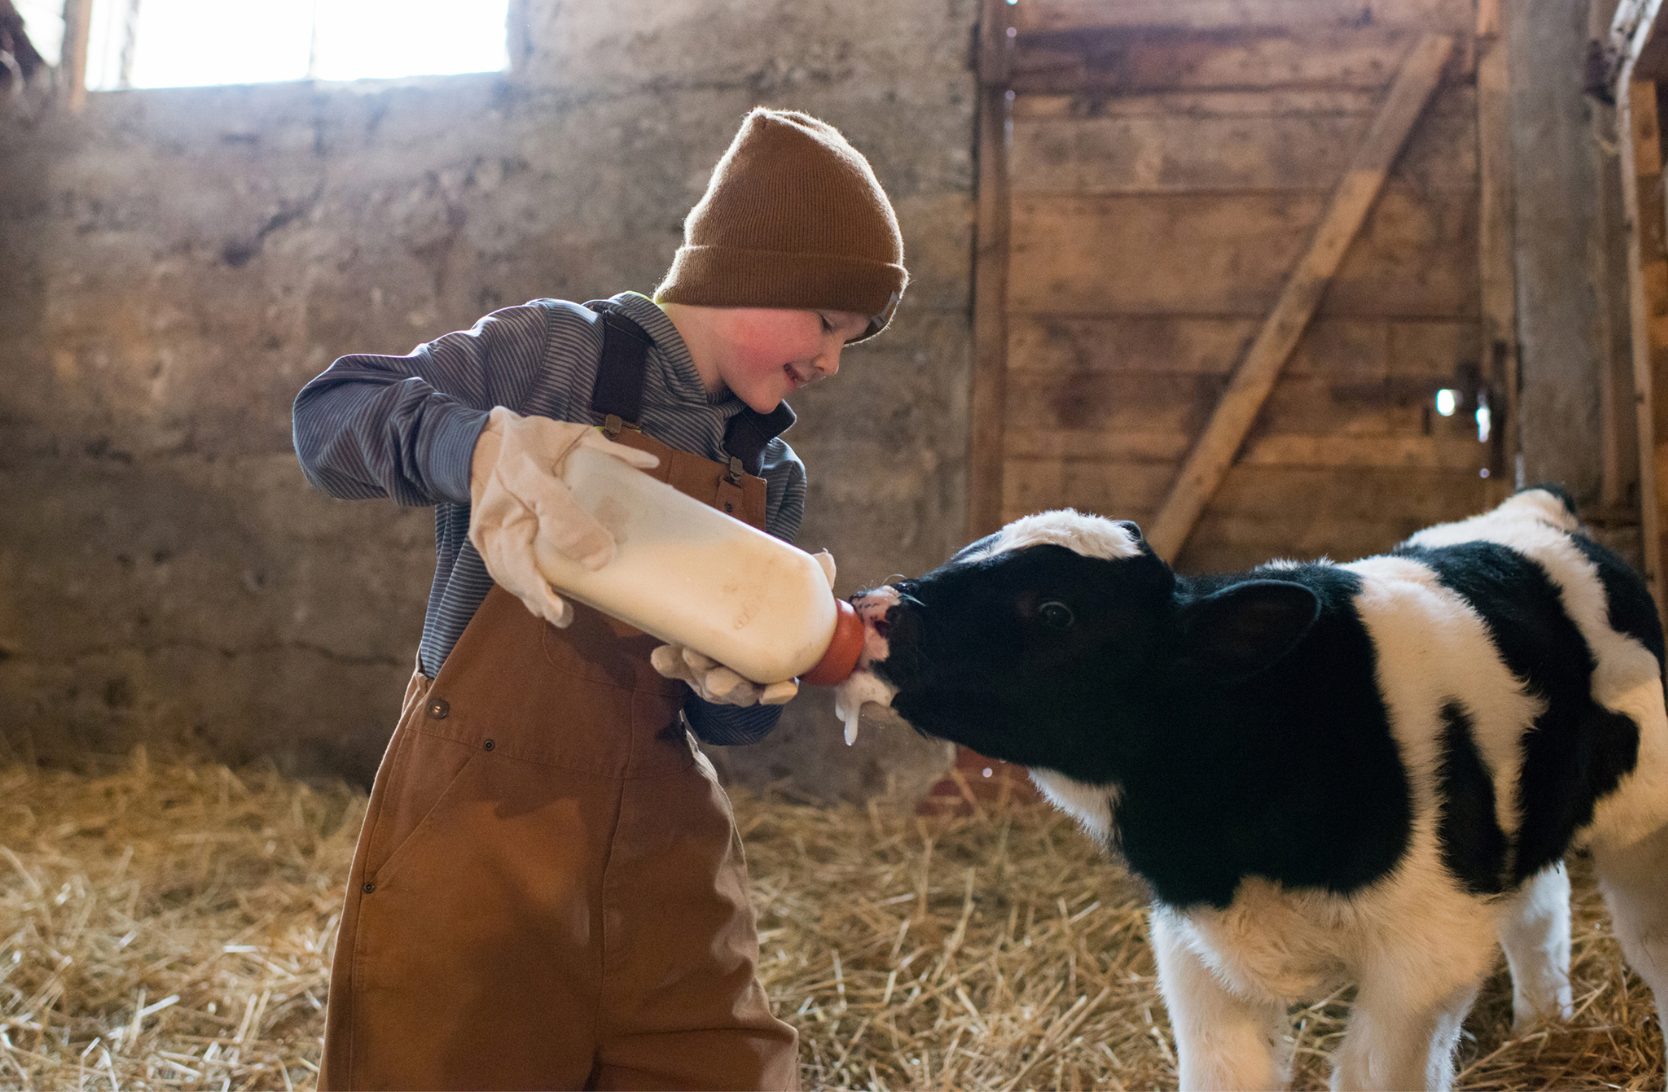 Boy bottle feeding a calf in a barn